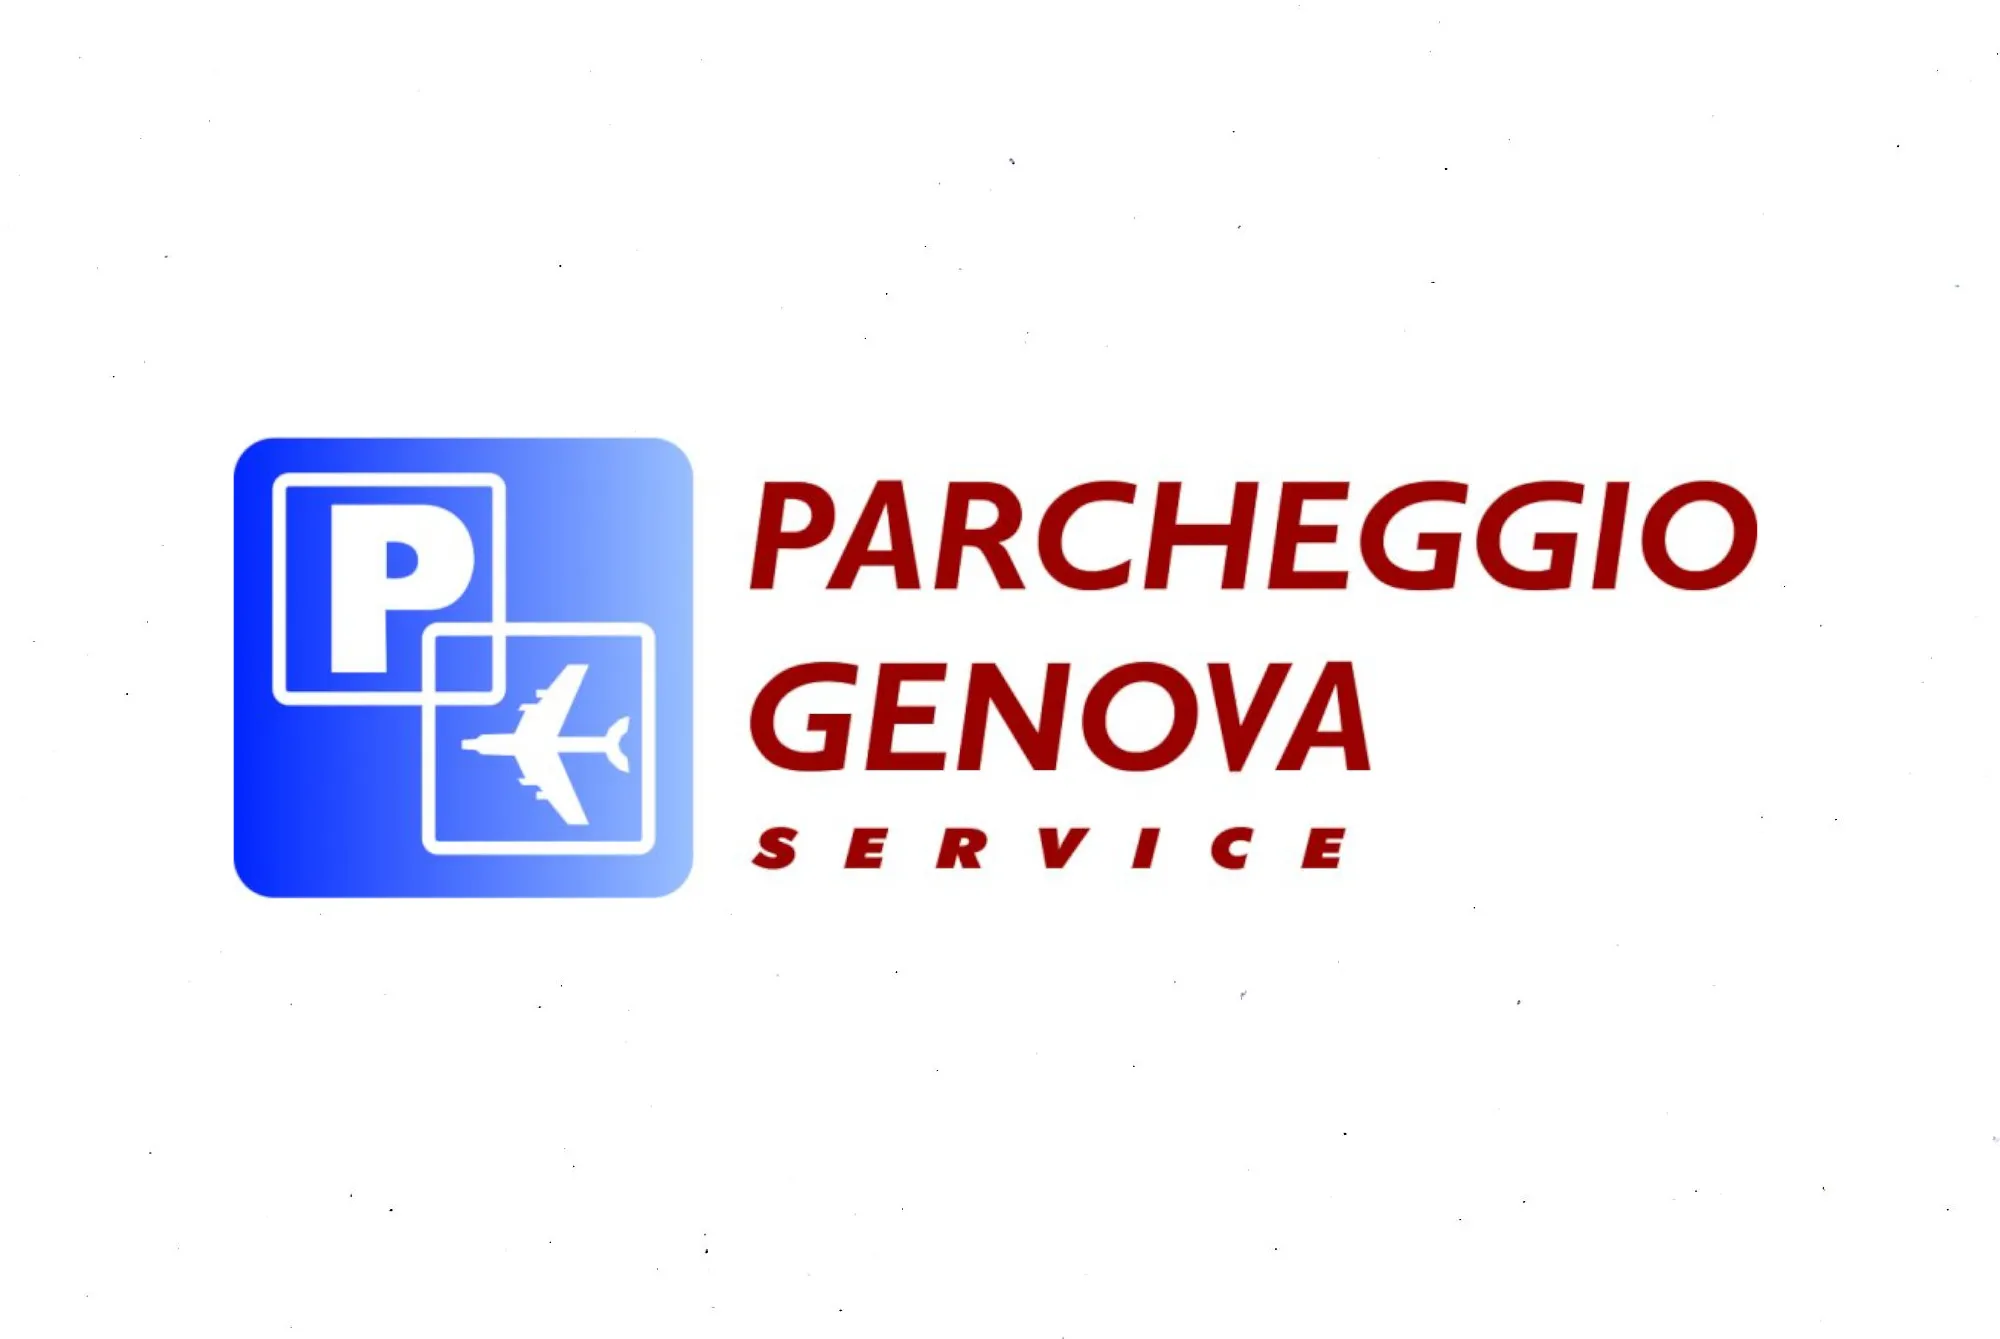 Parcheggio Genova Service (Paga in parcheggio) - Genoa Airport Parking - picture 1